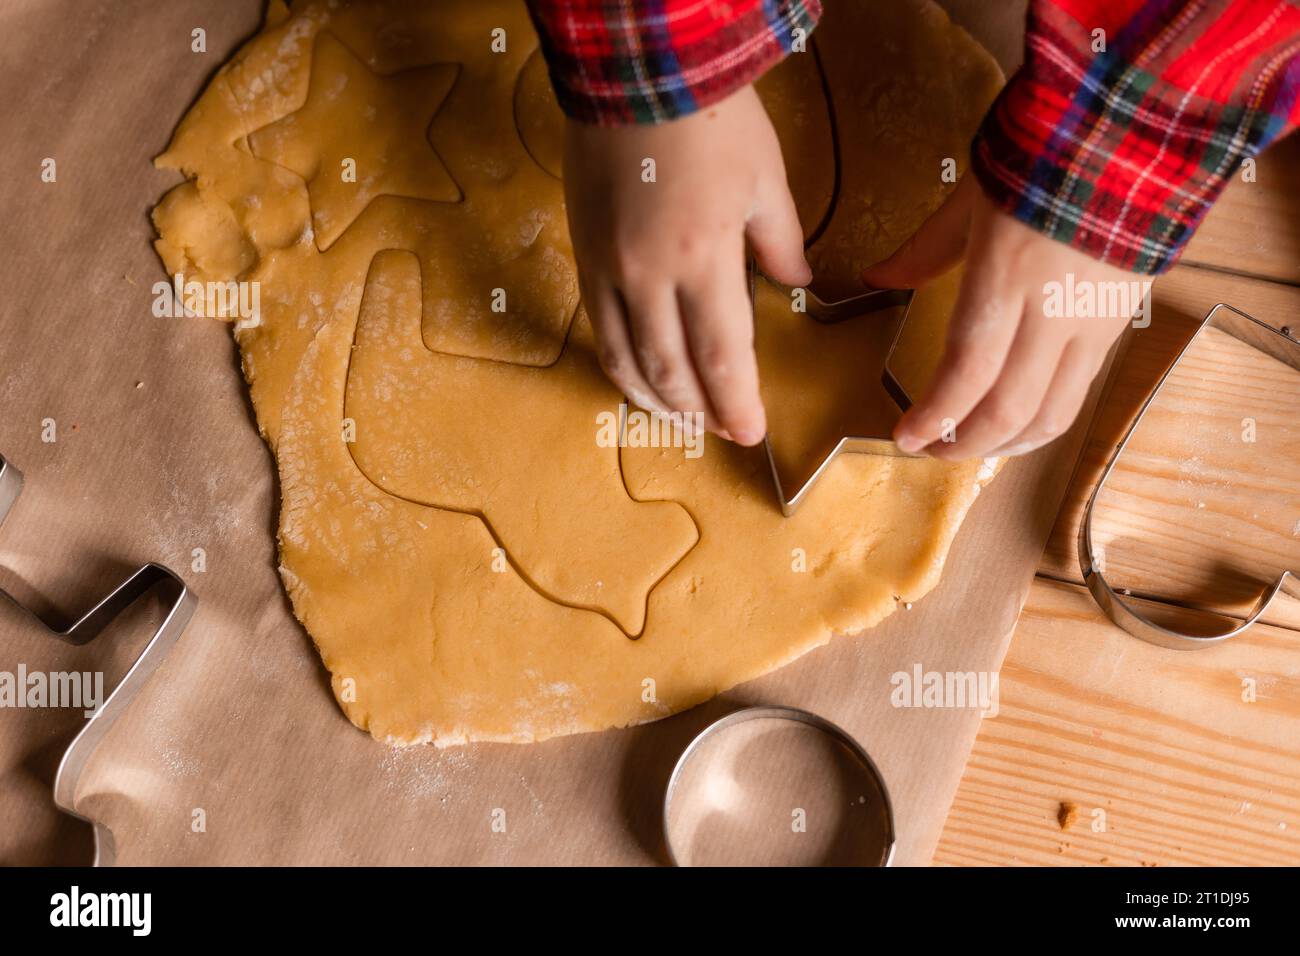 Primo piano delle mani di un bambino che distribuisce la pasta per biscotti per Natale. Foto di alta qualità Foto Stock